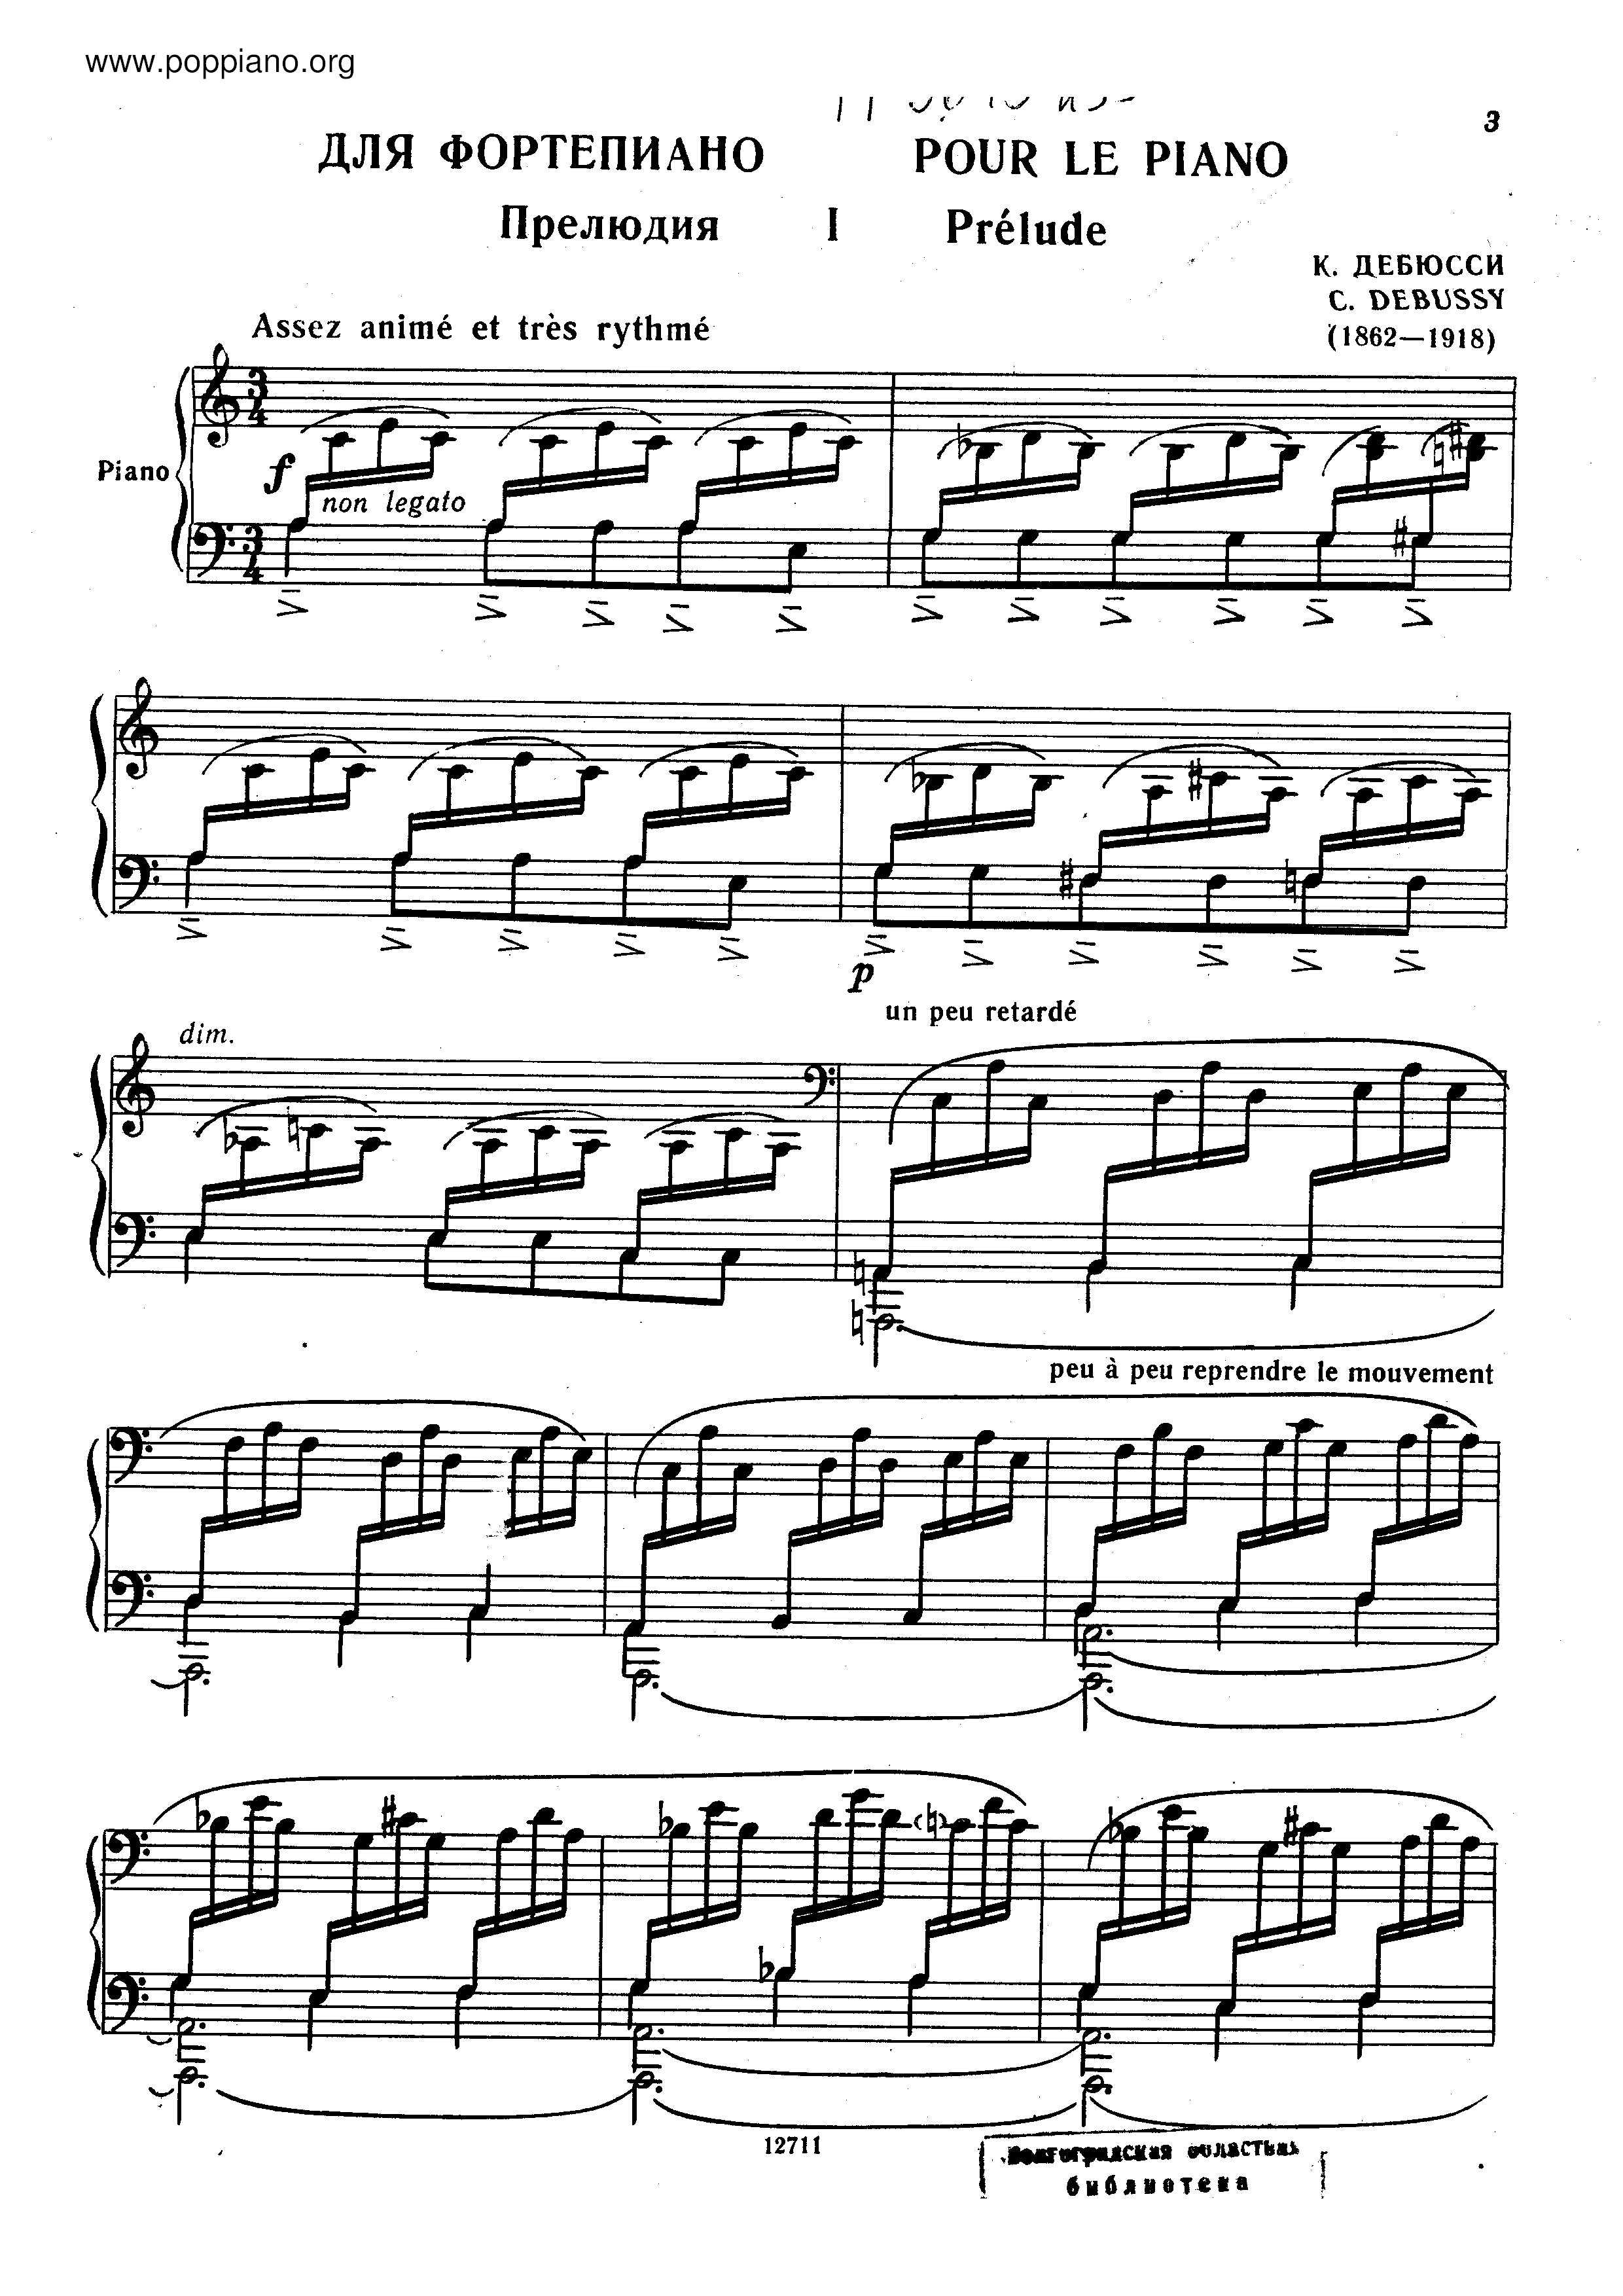 Pour le Piano Score